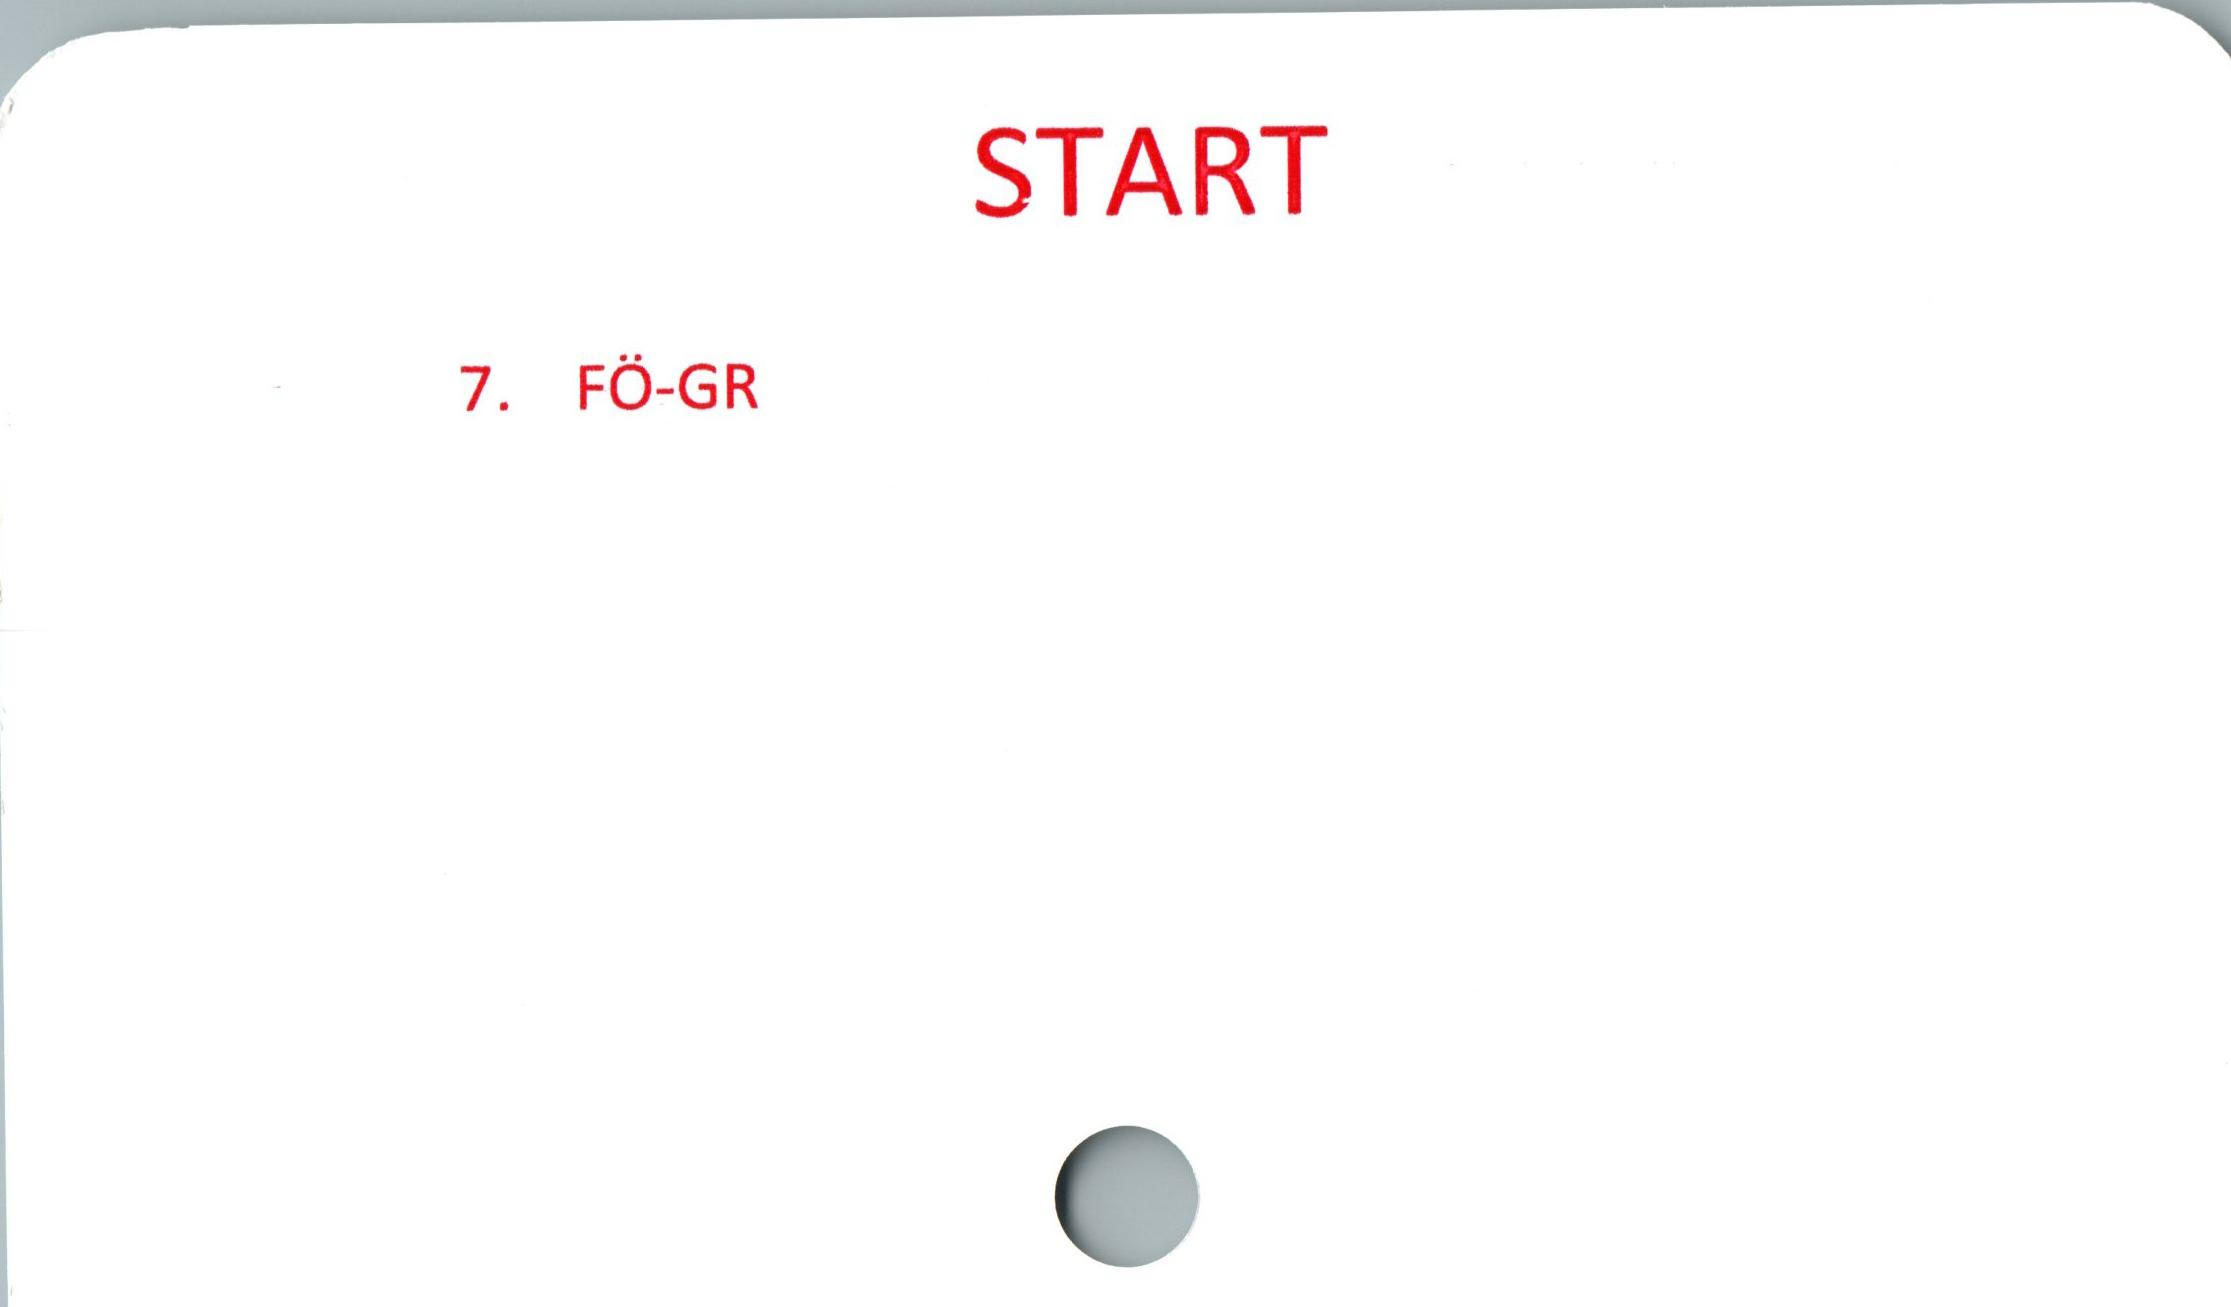 START ﻿START

7. FÖ-GR